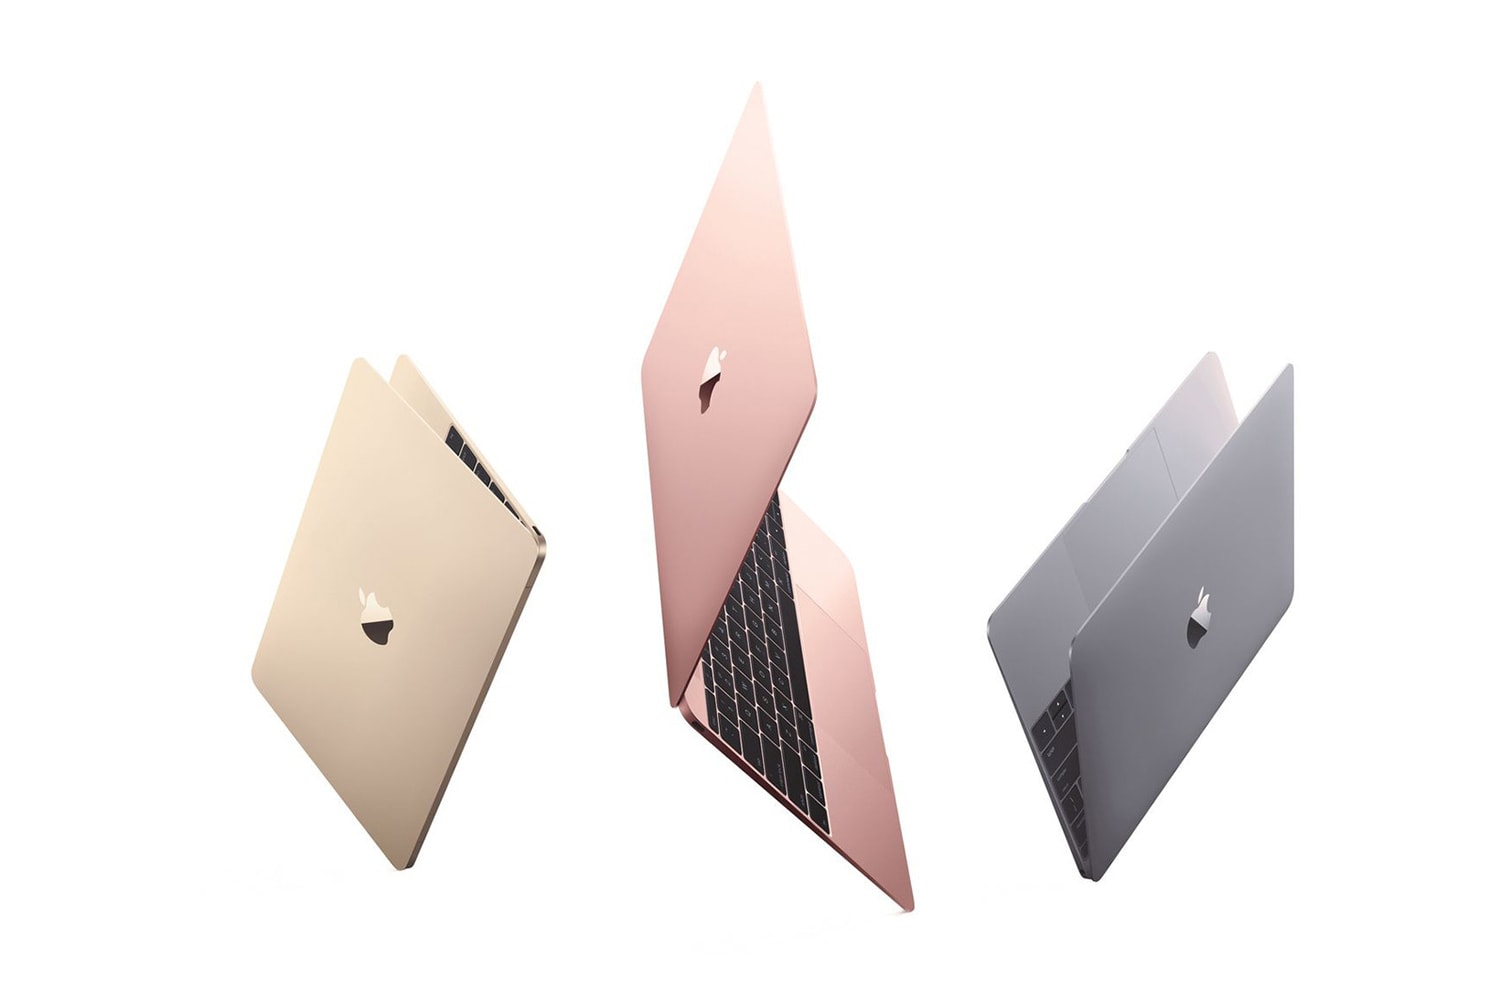 애플, '레티나 디스플레이'를 탑재한 새로운 맥북 출시 2018 apple new lower cost macbook retina display